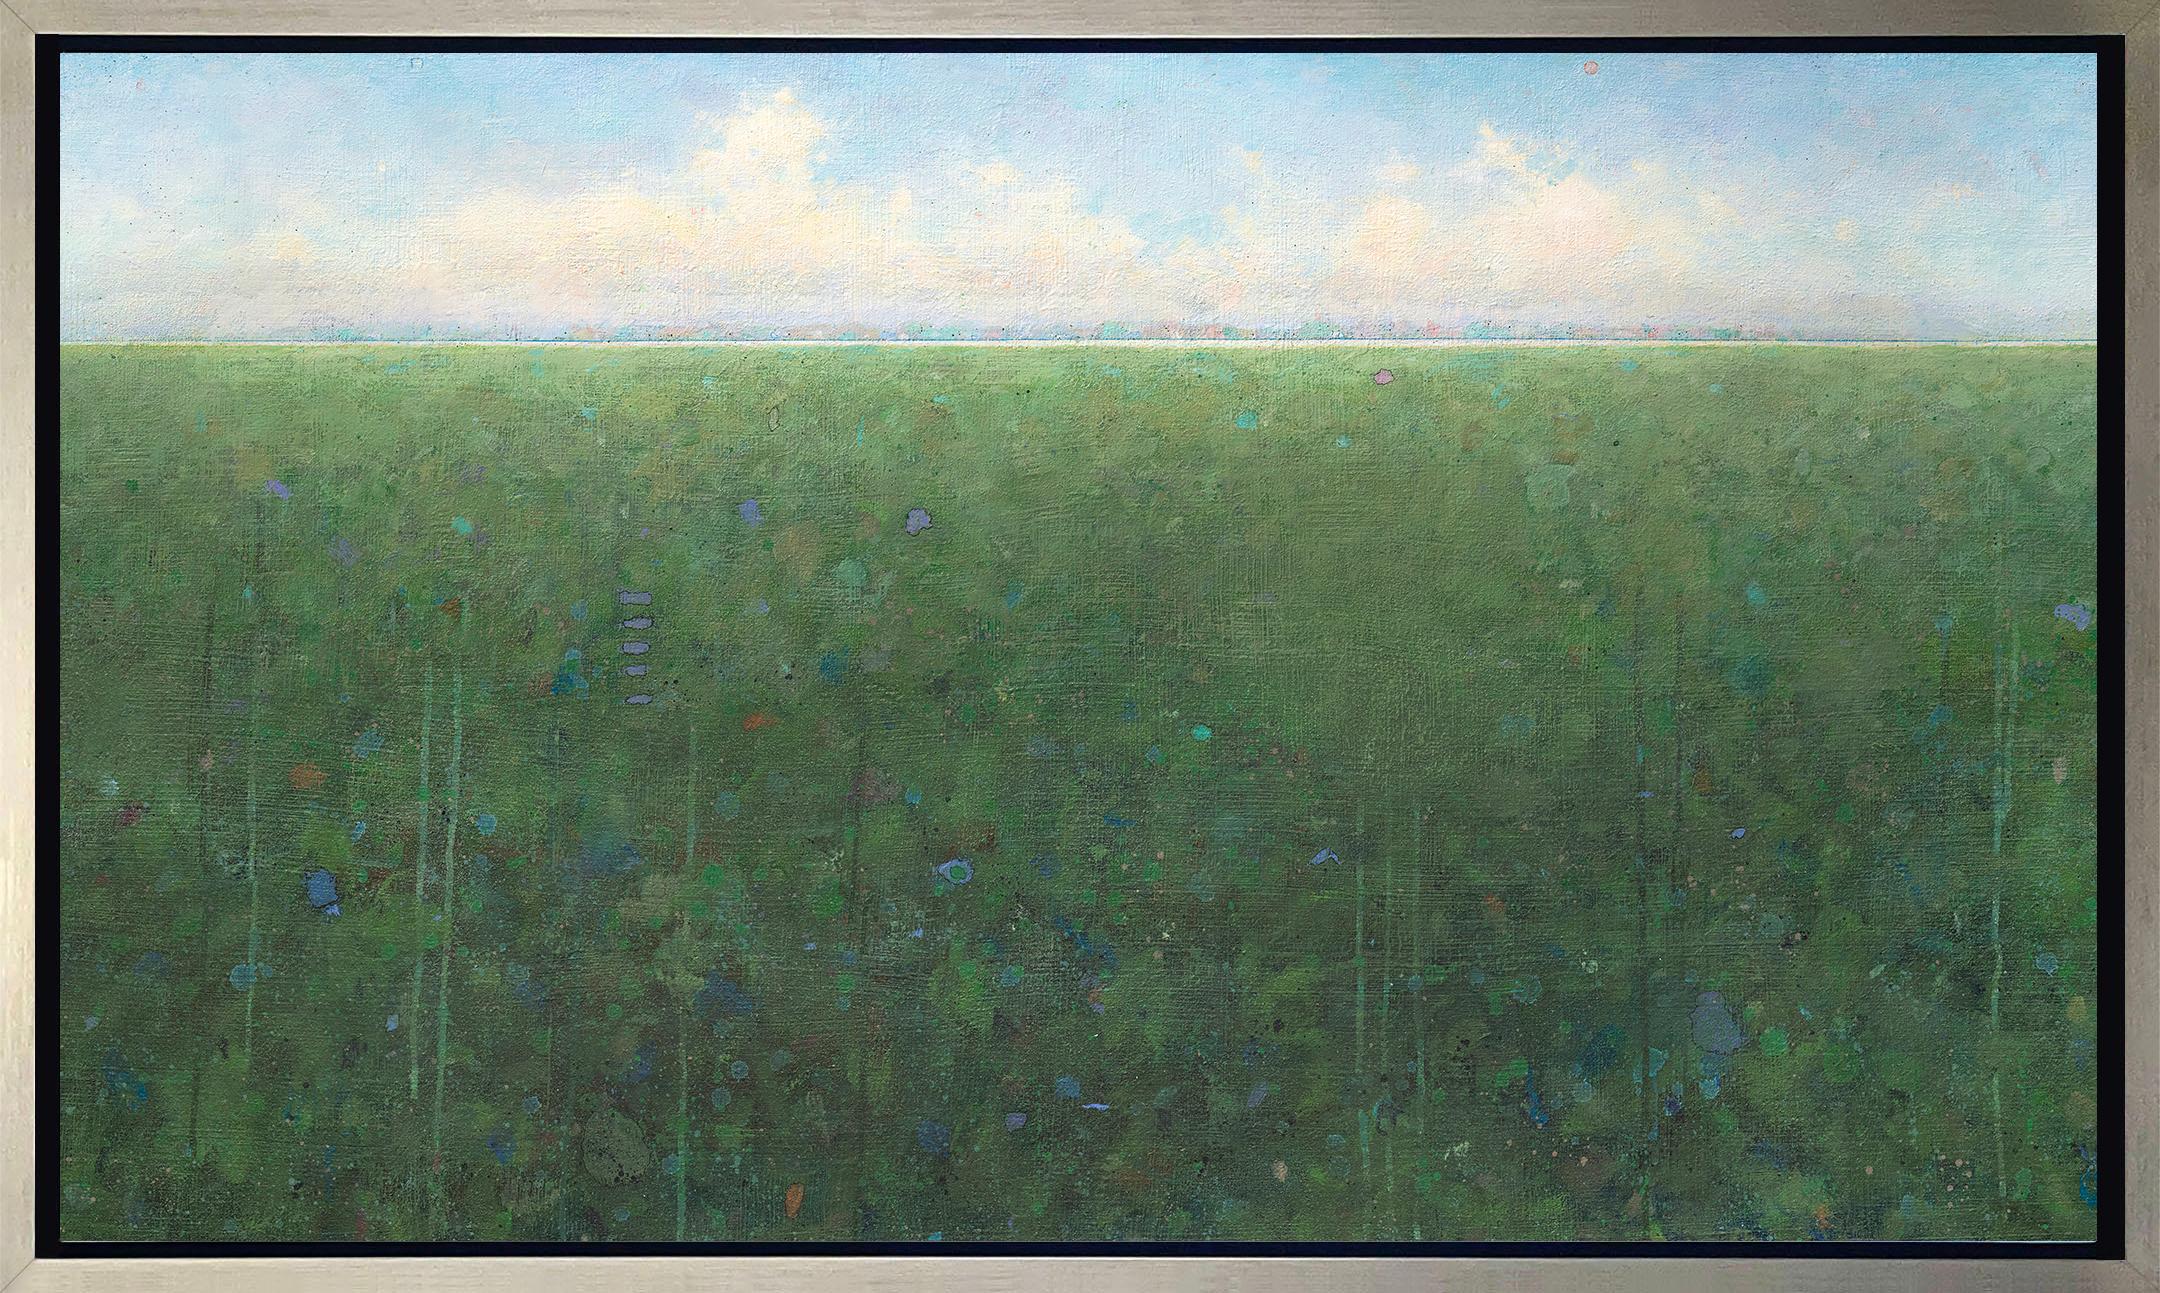 Abstract Print Elwood Howell - "Long View" - Giclée encadrée à tirage limité, 18" x 30".